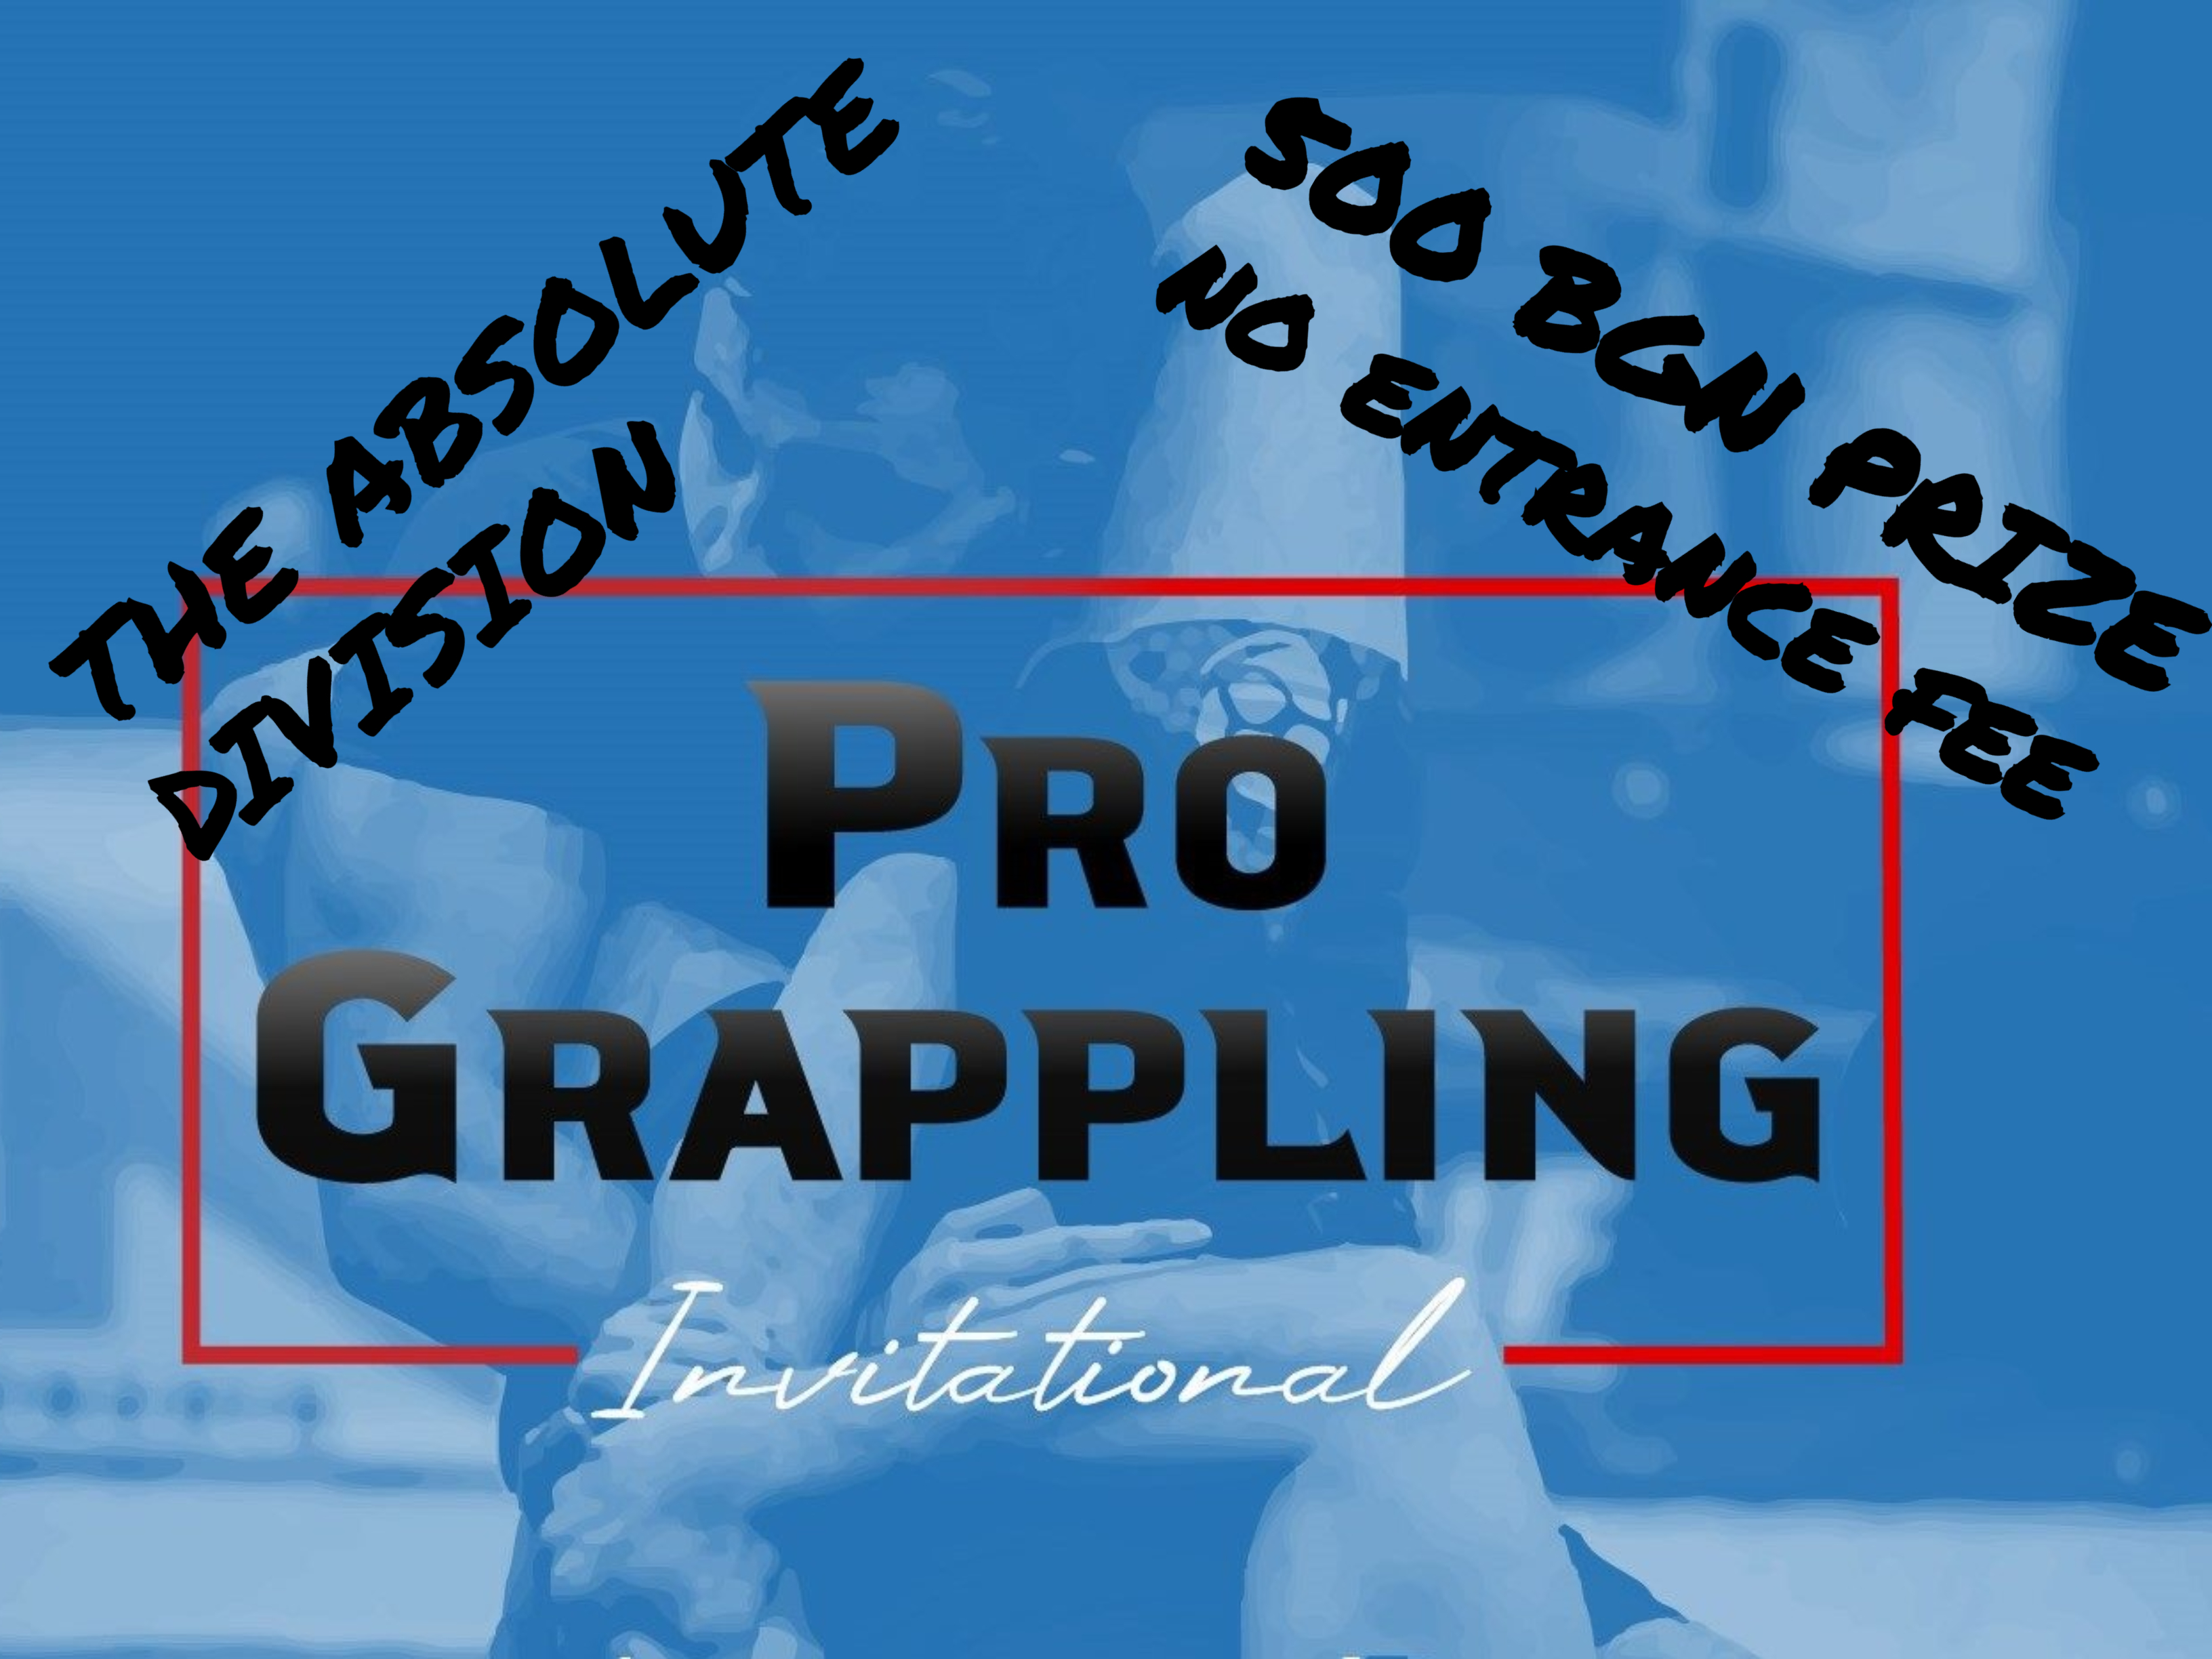 Pro Grappling Invitational ще търси абсолютен шампион през декември